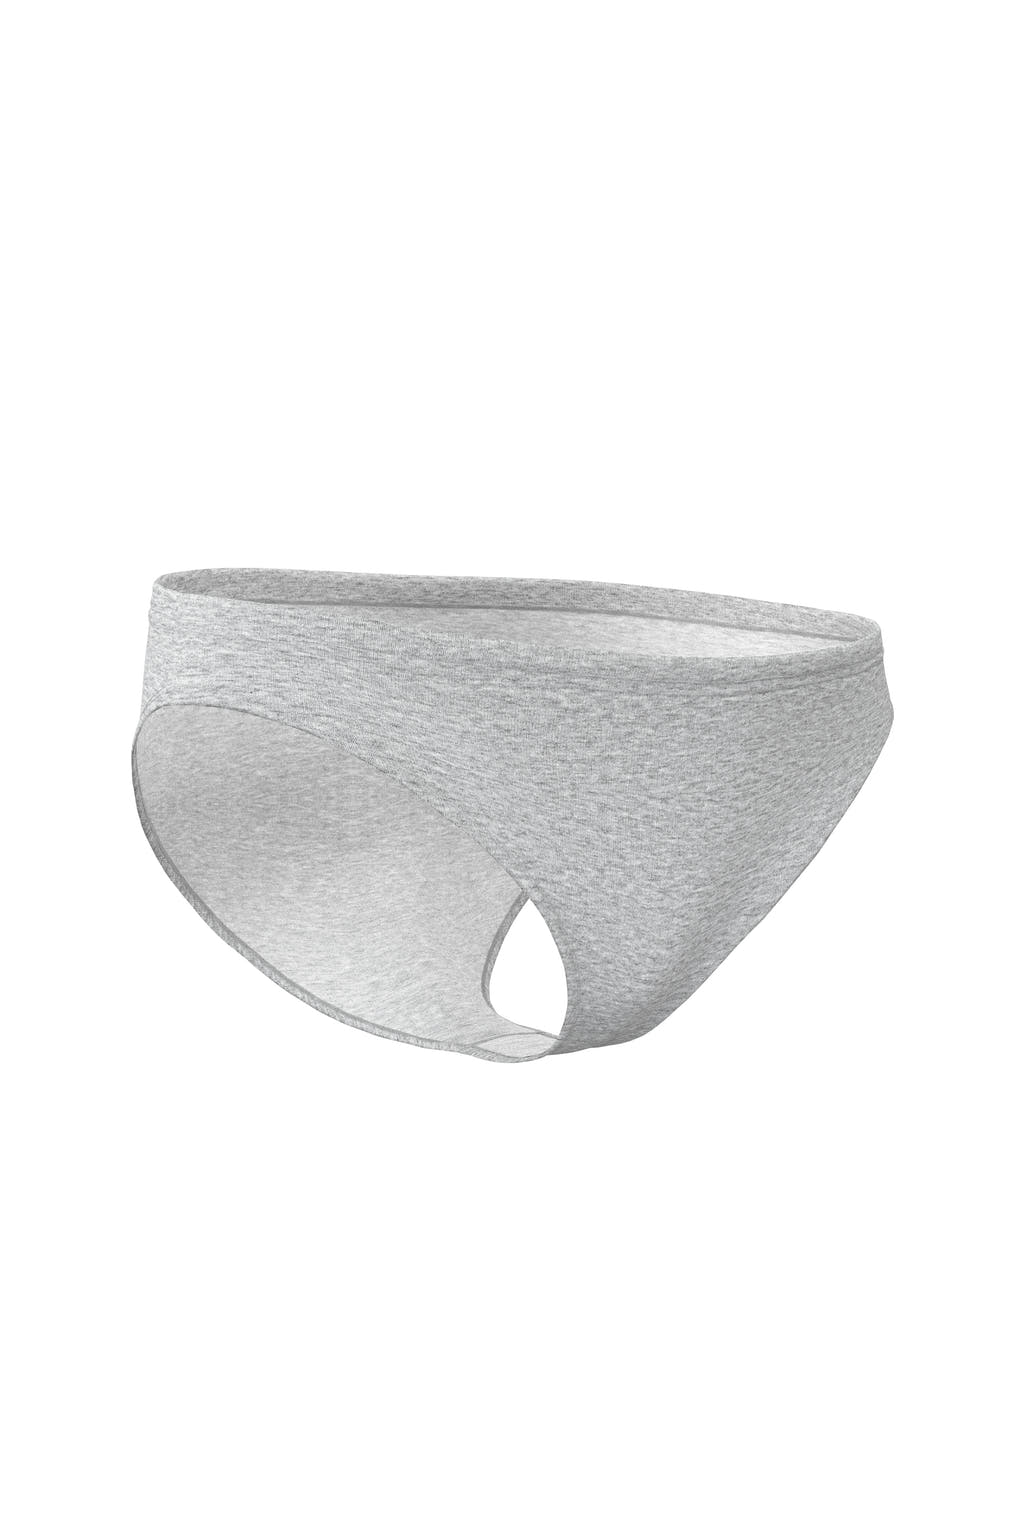 women's bikini cut underwear in grey